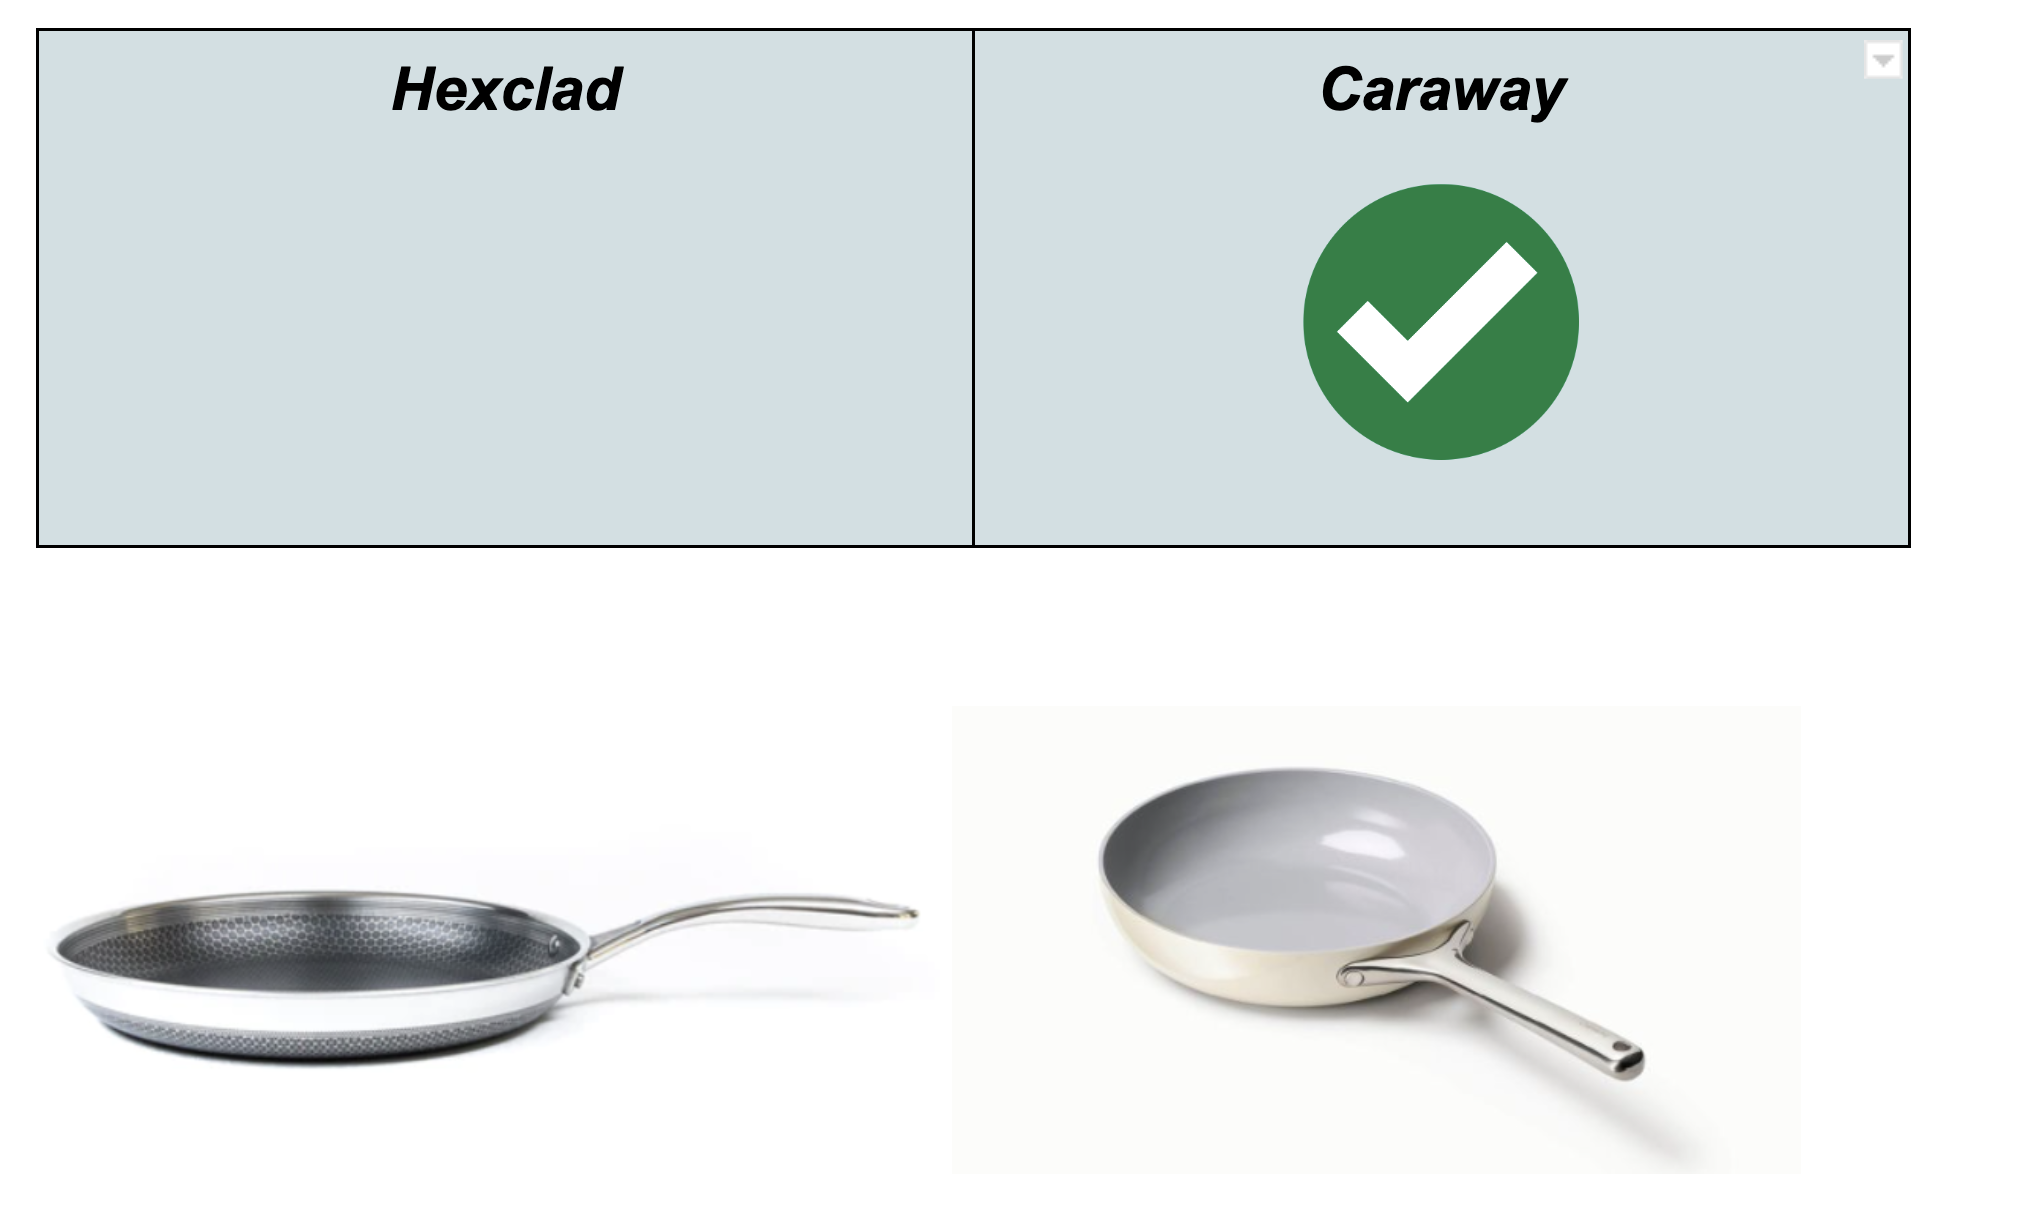 Design & Construction Caraway vs Hexclad